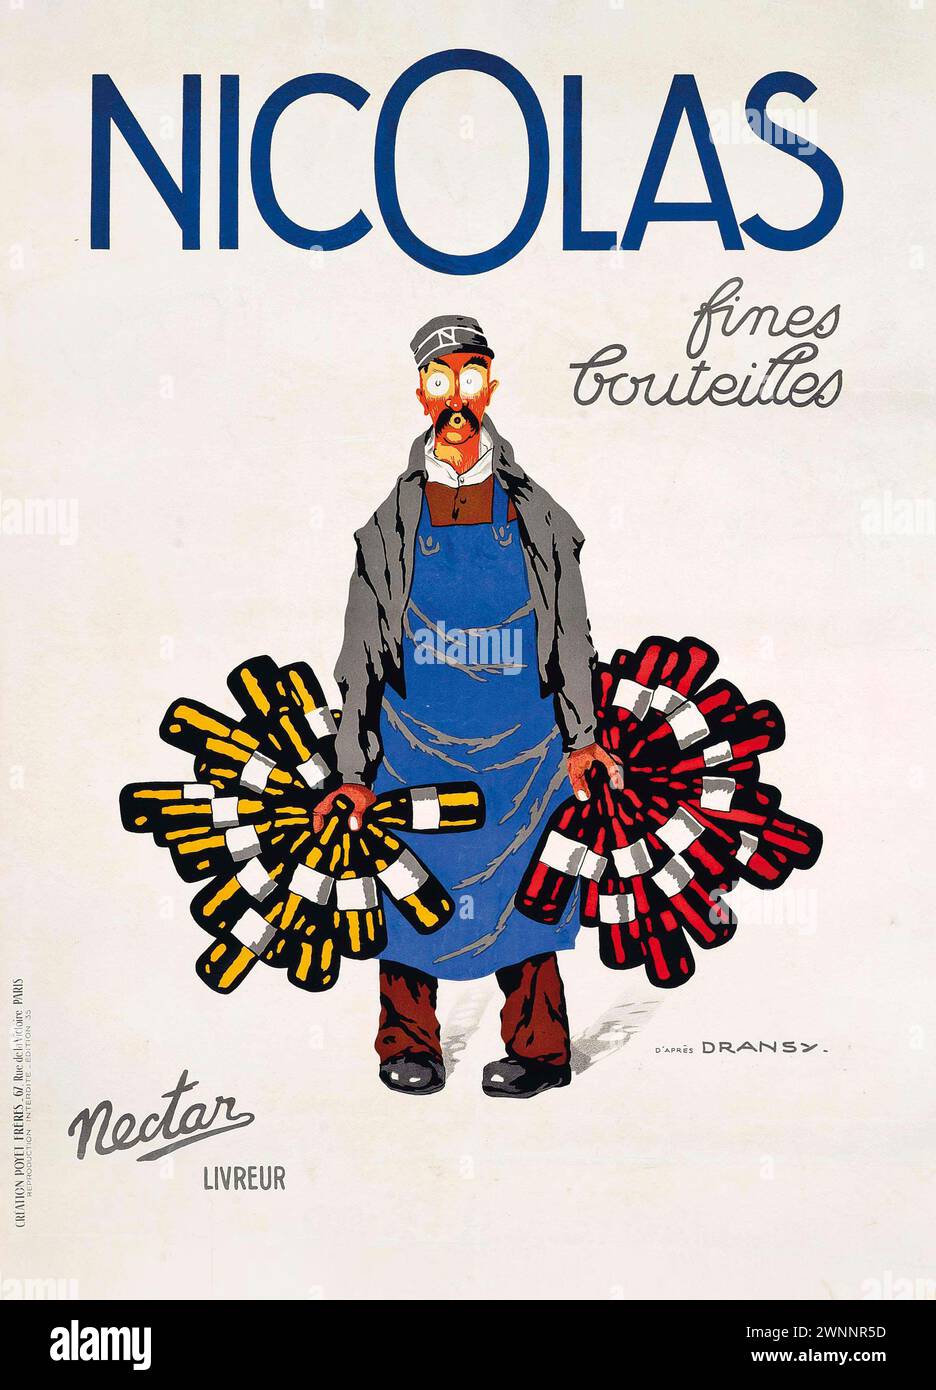 Affiche publicitaire vintage : pour Nicolas fines bouteilles, magasin de vin. Par Jules Isnard Dransy vers 1930 Banque D'Images